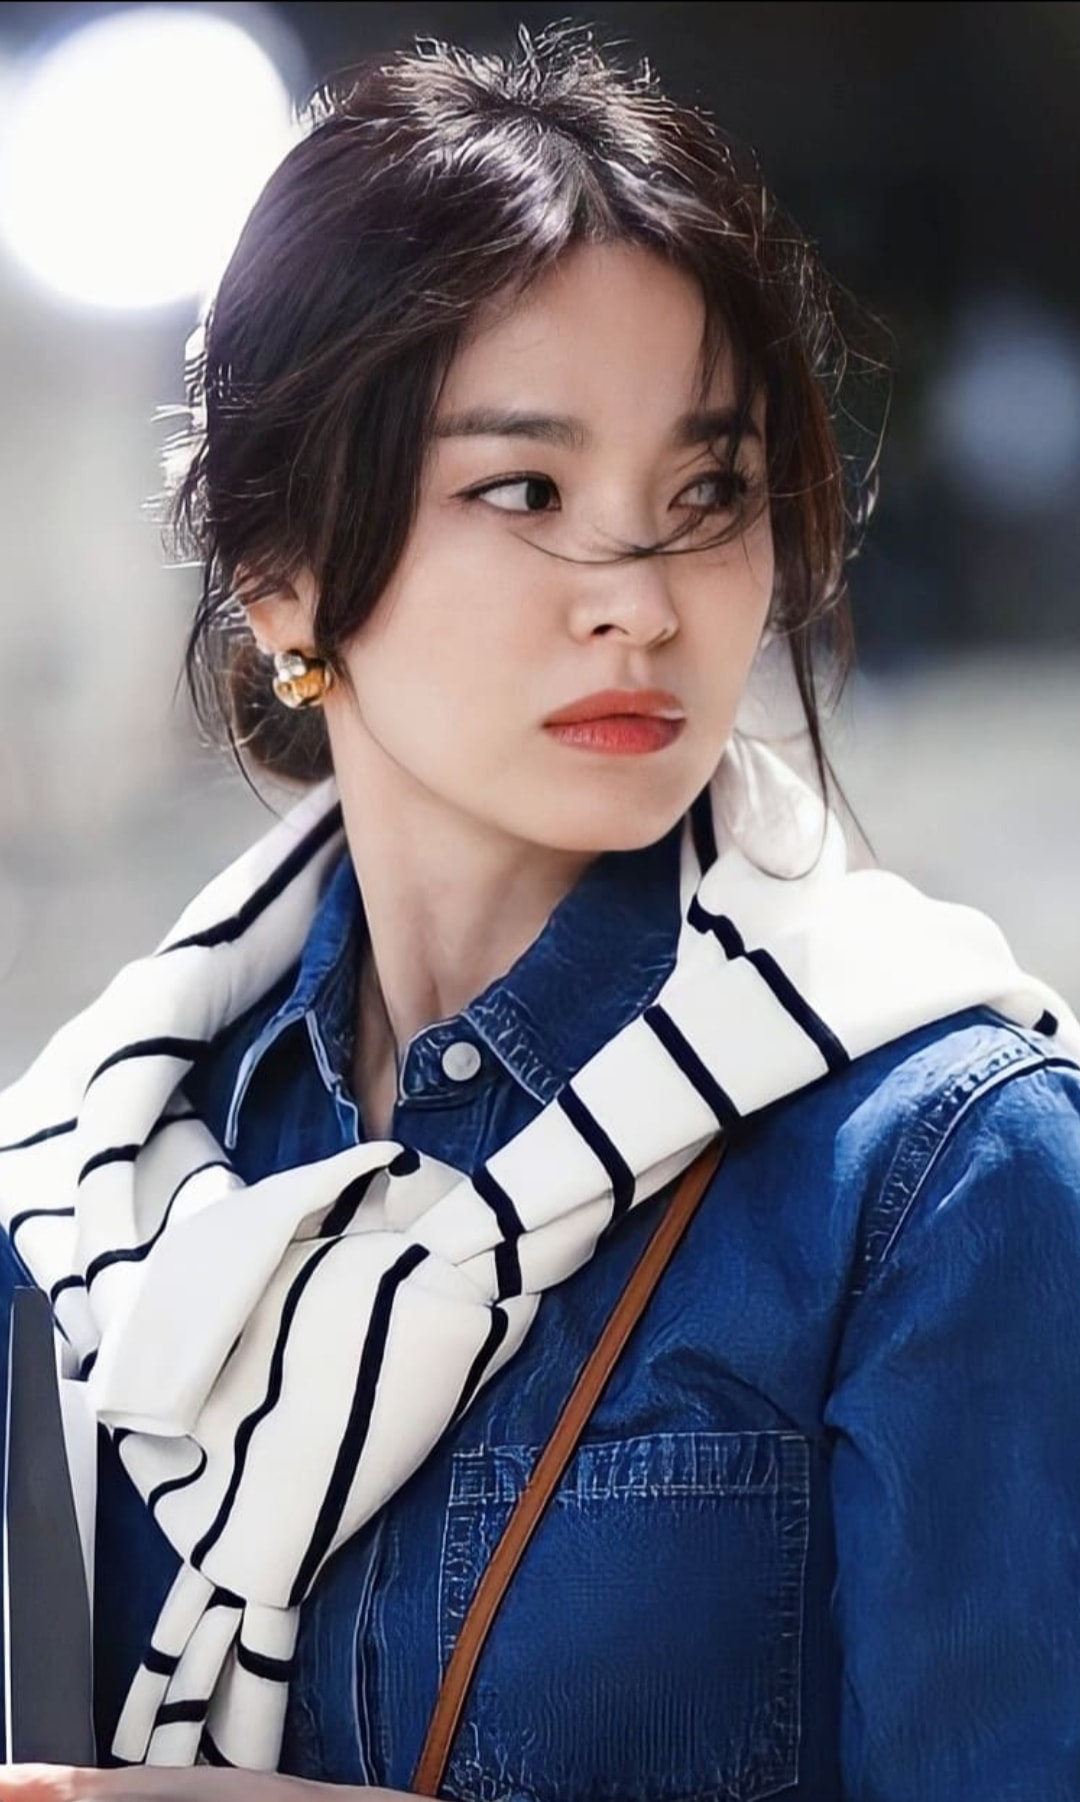 Song Hye Kyo tay xách nách mang, ngồi ngoài đường vẫn đẹp xuất thần - Ảnh 5